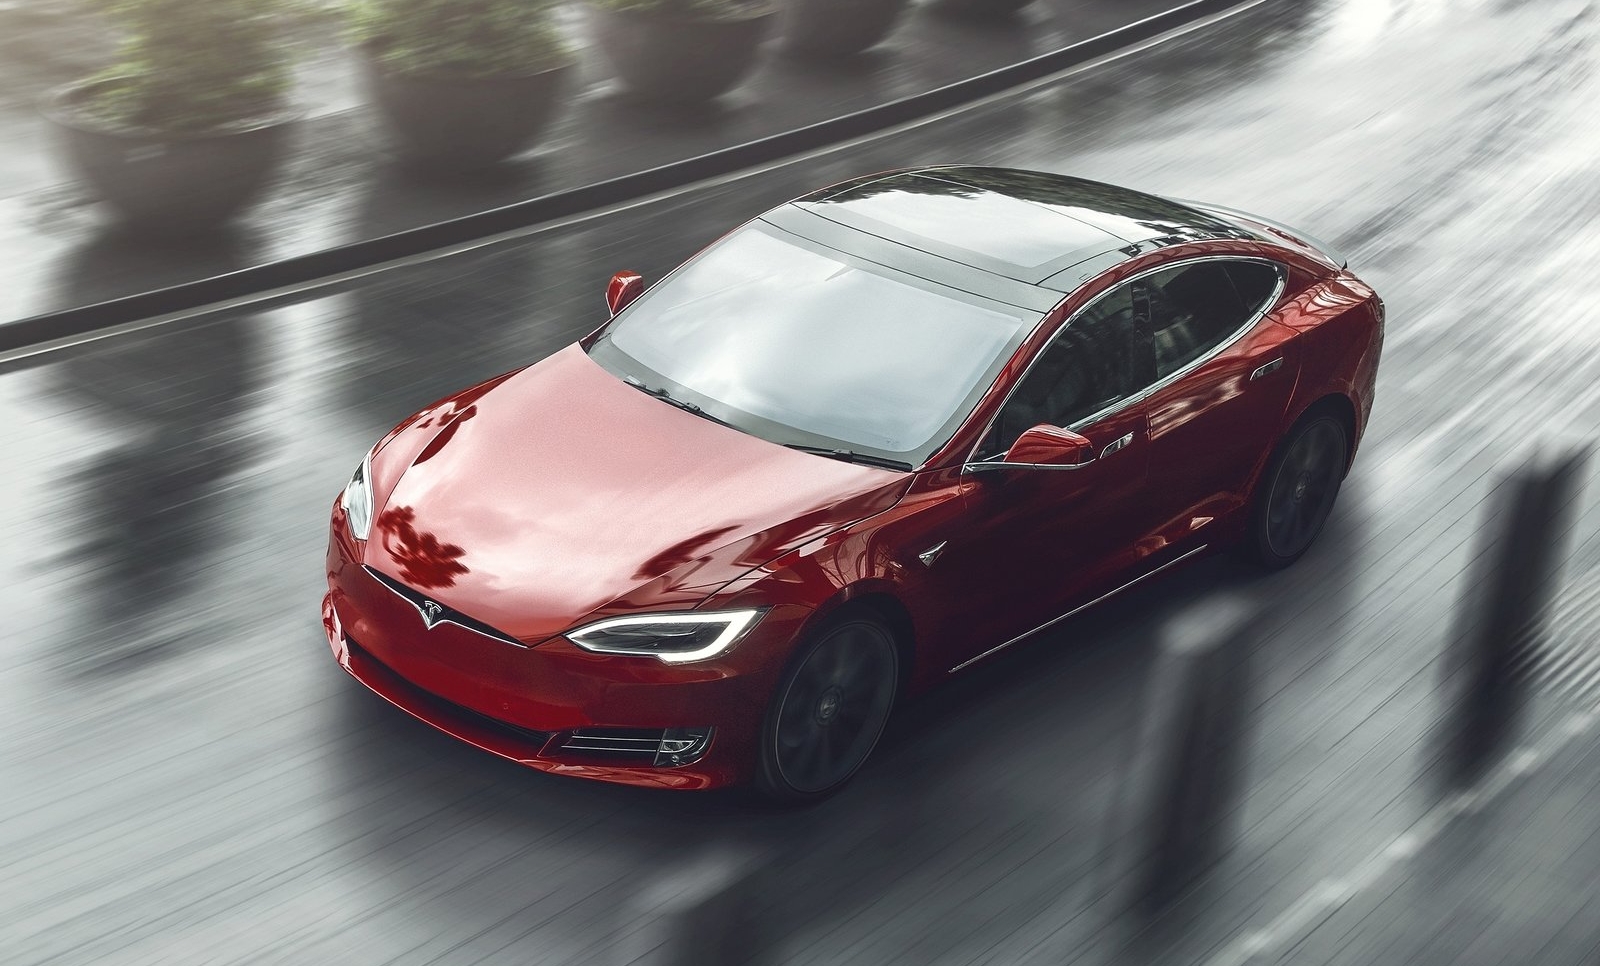 binnenkort olifant ongeluk Tesla verandert prijzen en aanbod Model S, 3, X alweer